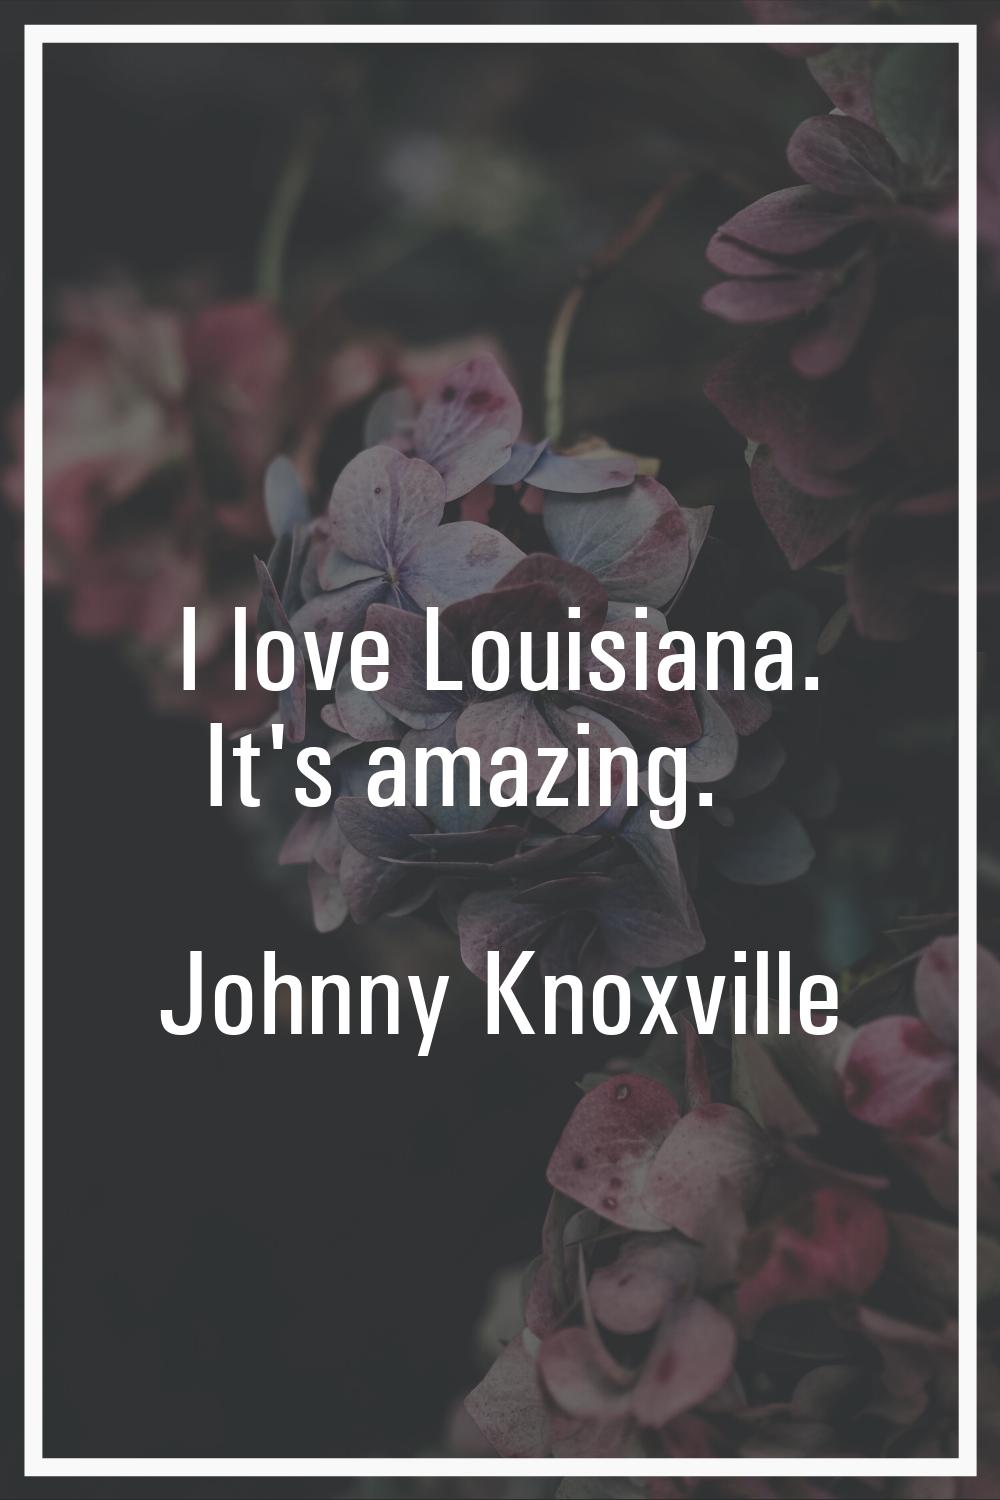 I love Louisiana. It's amazing.